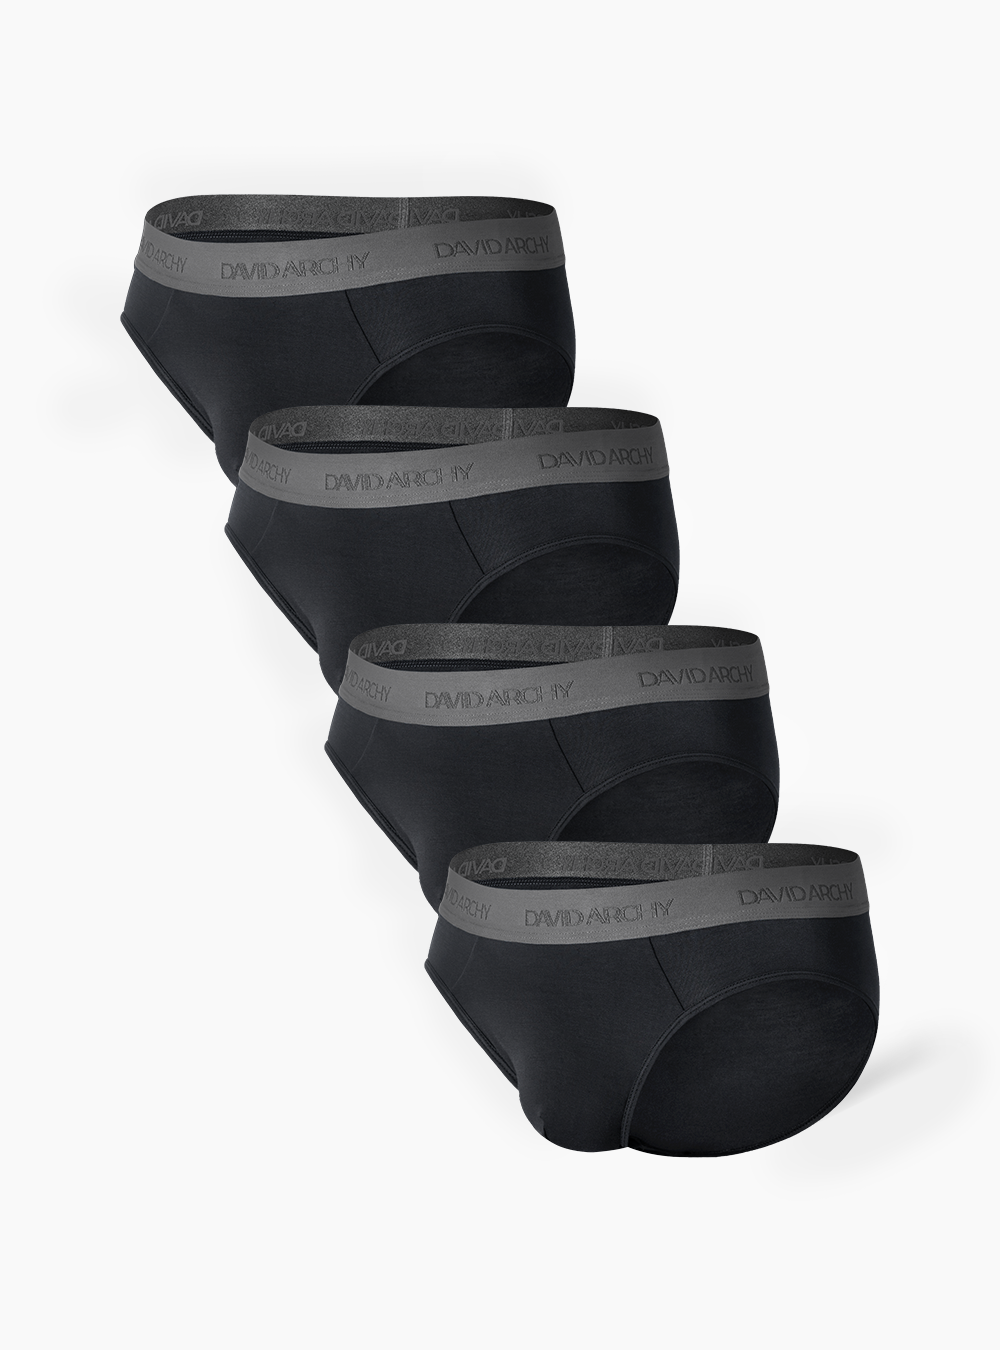 David Archy 4 Packs Briefs Pouch Support Bamboo Fiber Elite Men's Underwear  Black – David Archy UK